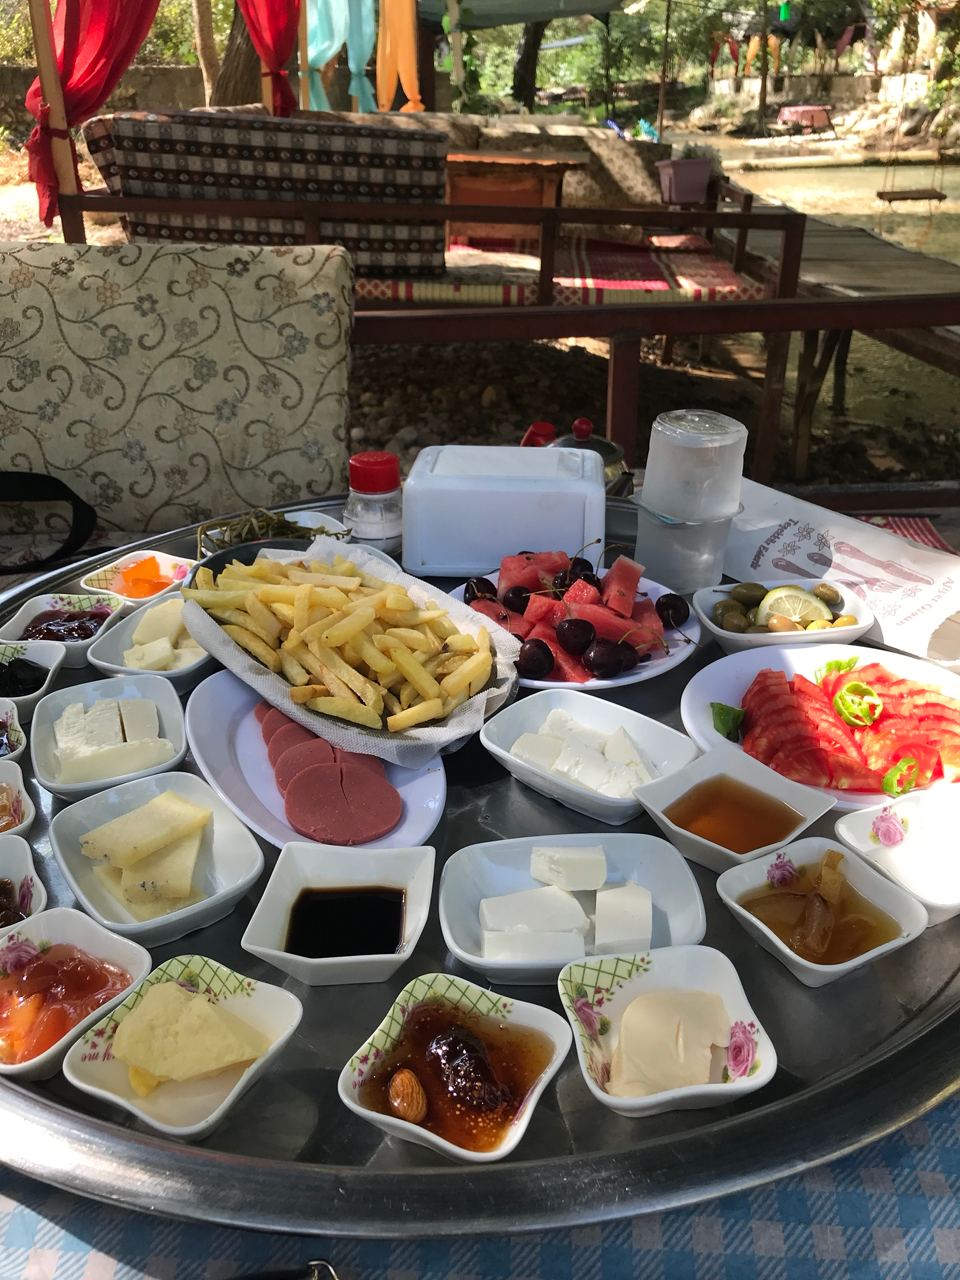 Турецкий завтрак, относительно скромная порция